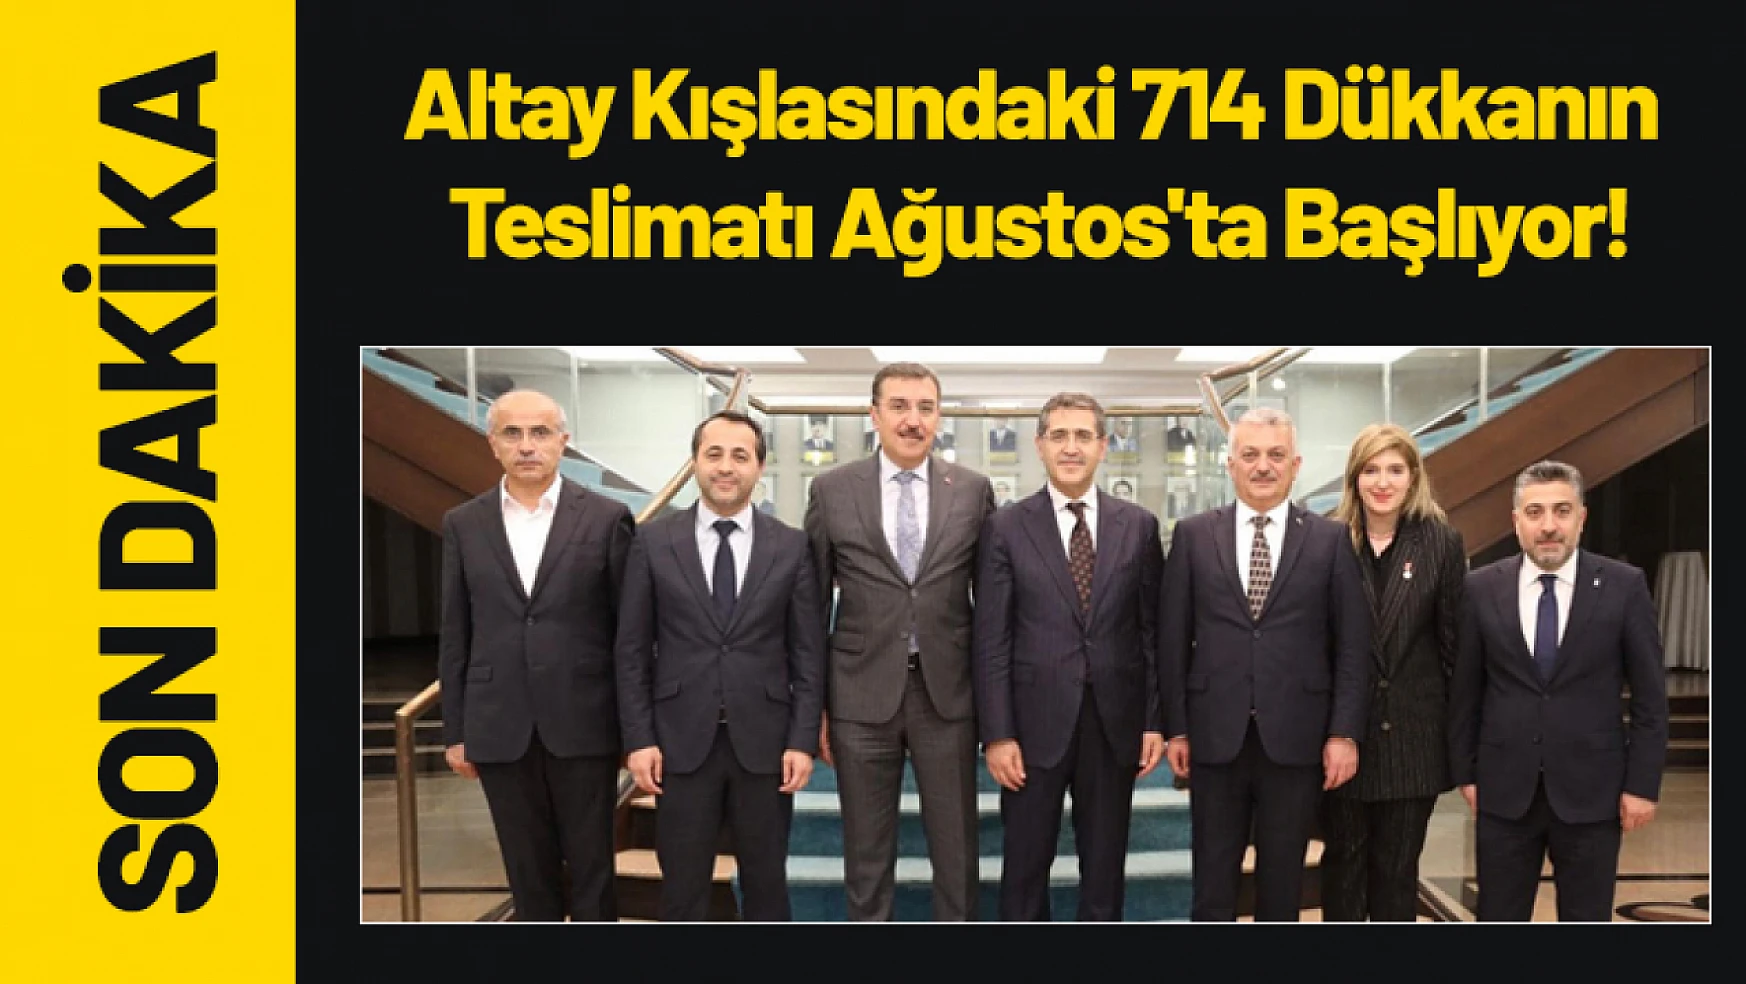 Altay Kışlasındaki 714 Dükkanın Teslimatı Ağustos'ta Başlıyor!